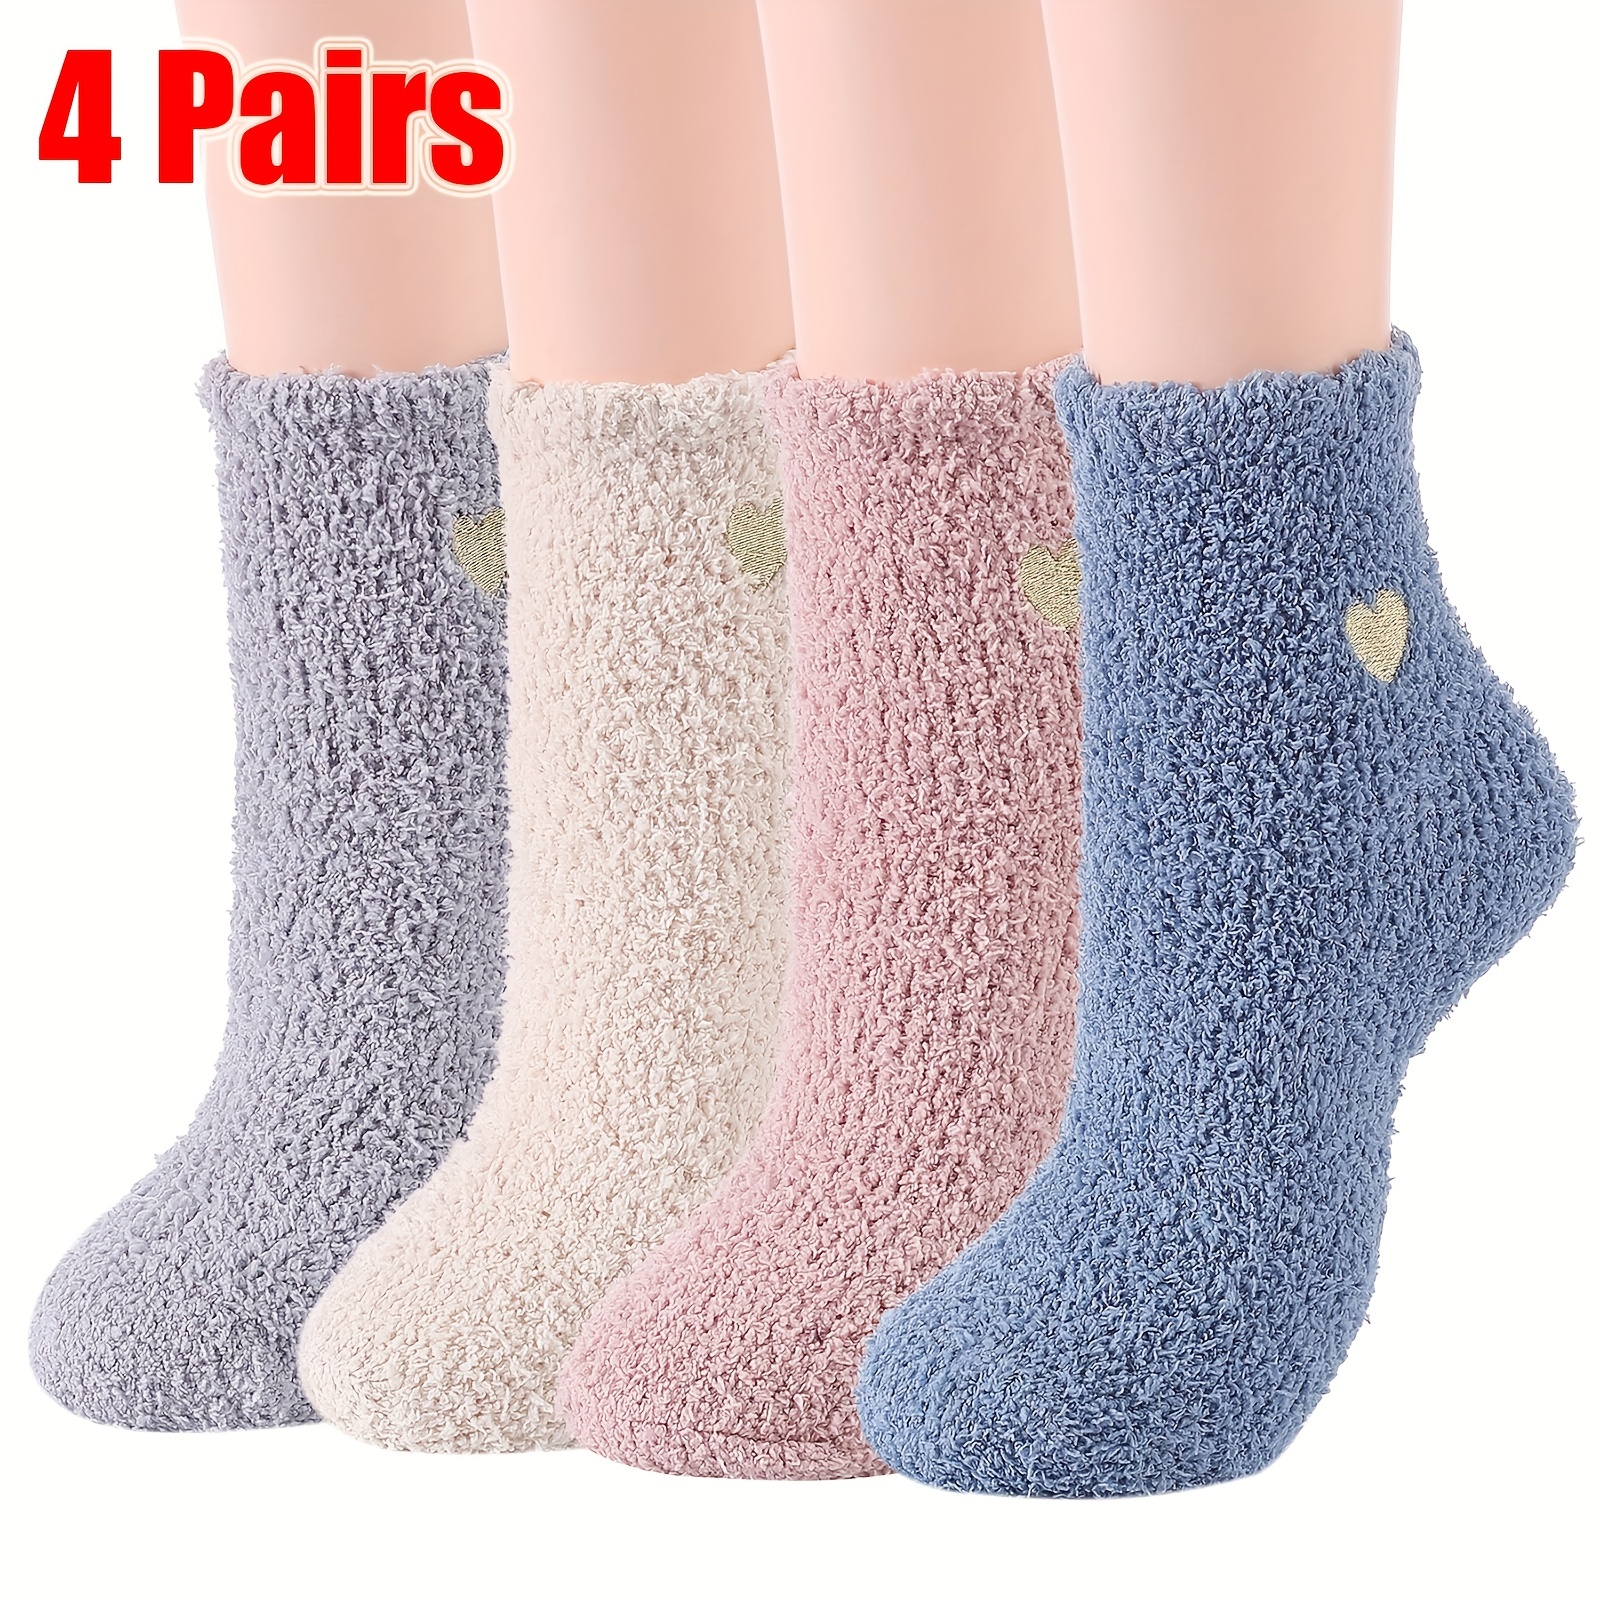 4 Pairs Cozy Fuzzy Socks For Women, Hospital Socks With Grips, Non Slip  Socks Slipper Socks Sleep Fluffy Socks